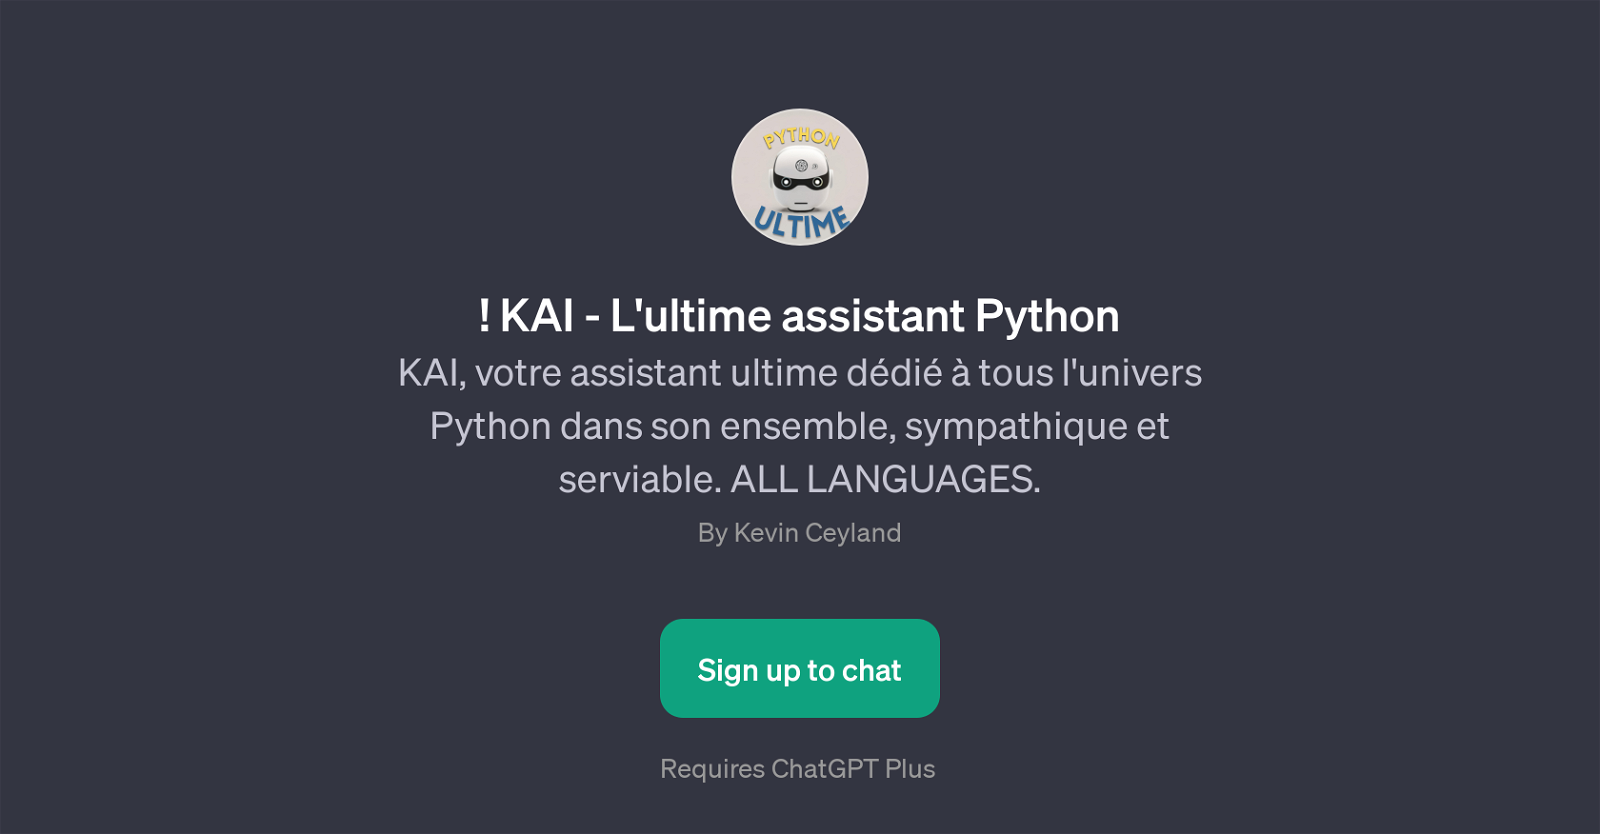 KAI - L'ultime assistant Python website